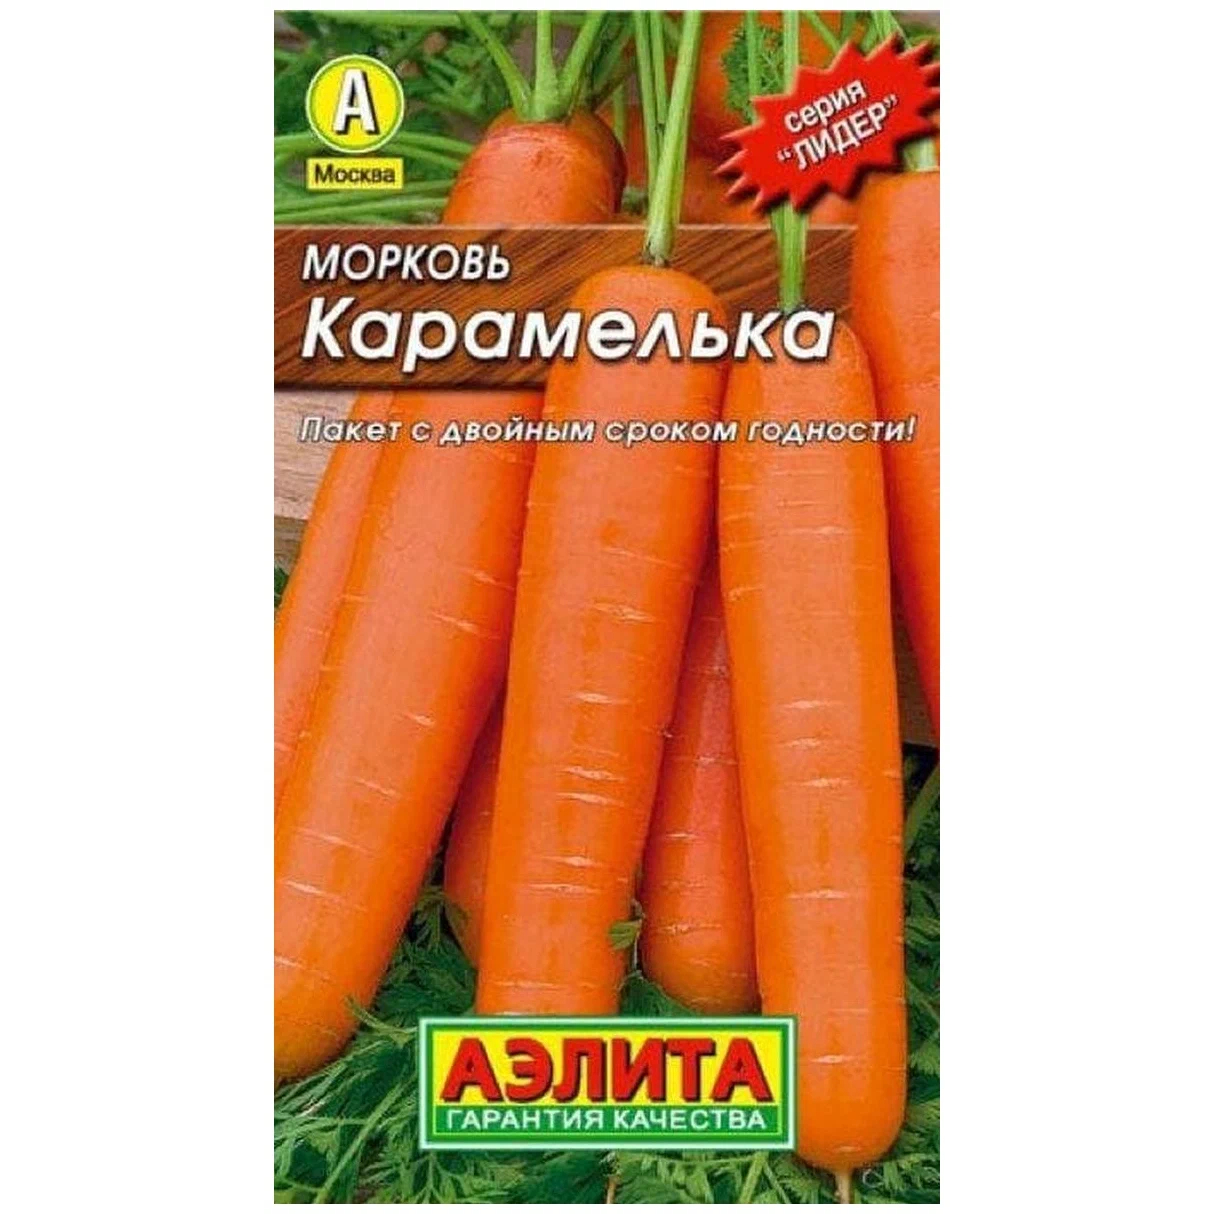 морковь карамелька описание сорта фото отзывы